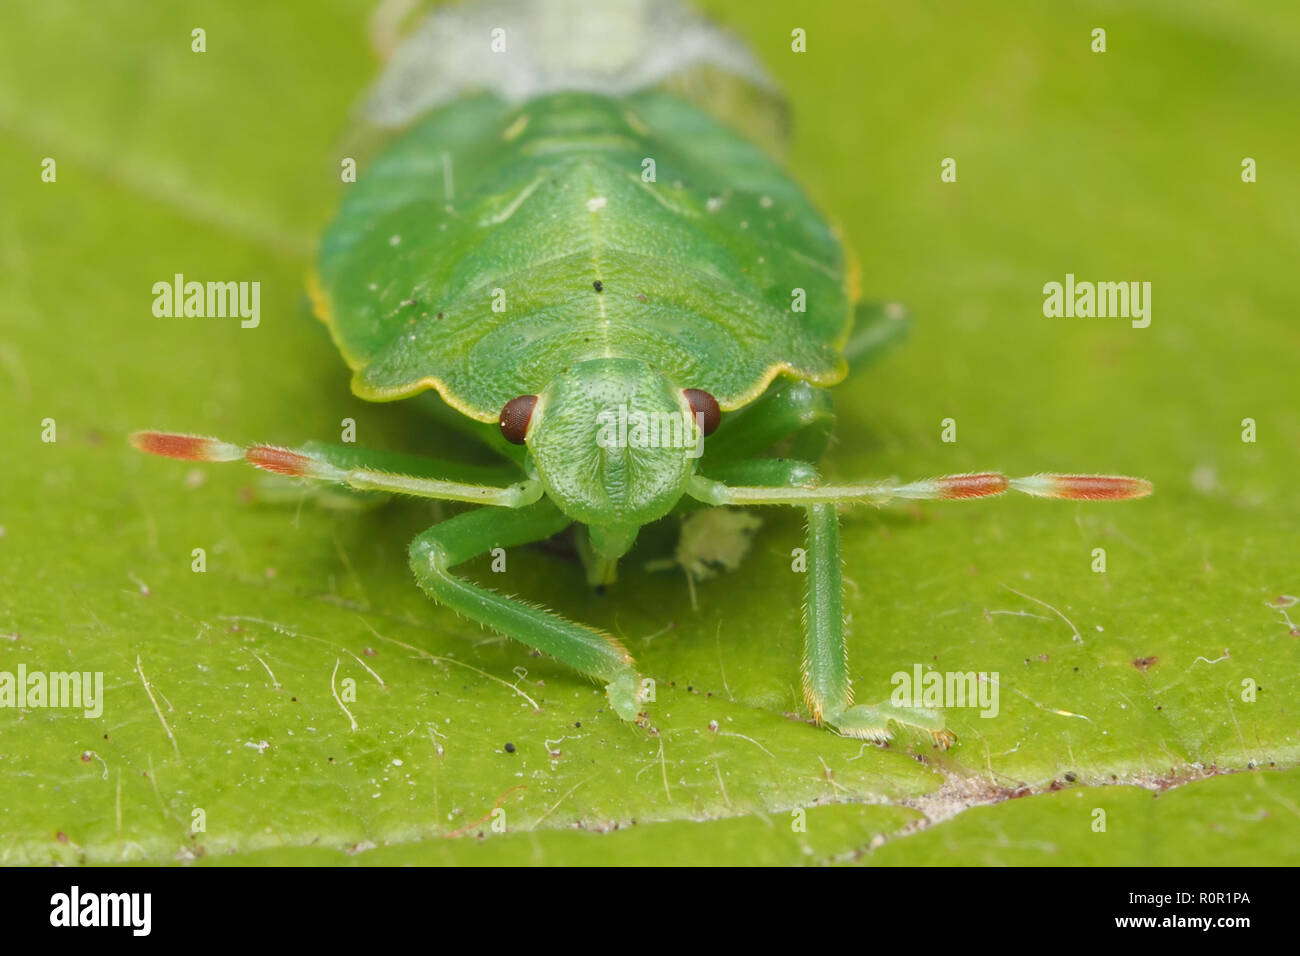 Close up Frontalansicht des frisch gehäutet Gemeinsamen Green Shieldbug (Palomena prasina) Endgültige instar Nymphe. Tipperary, Irland Stockfoto